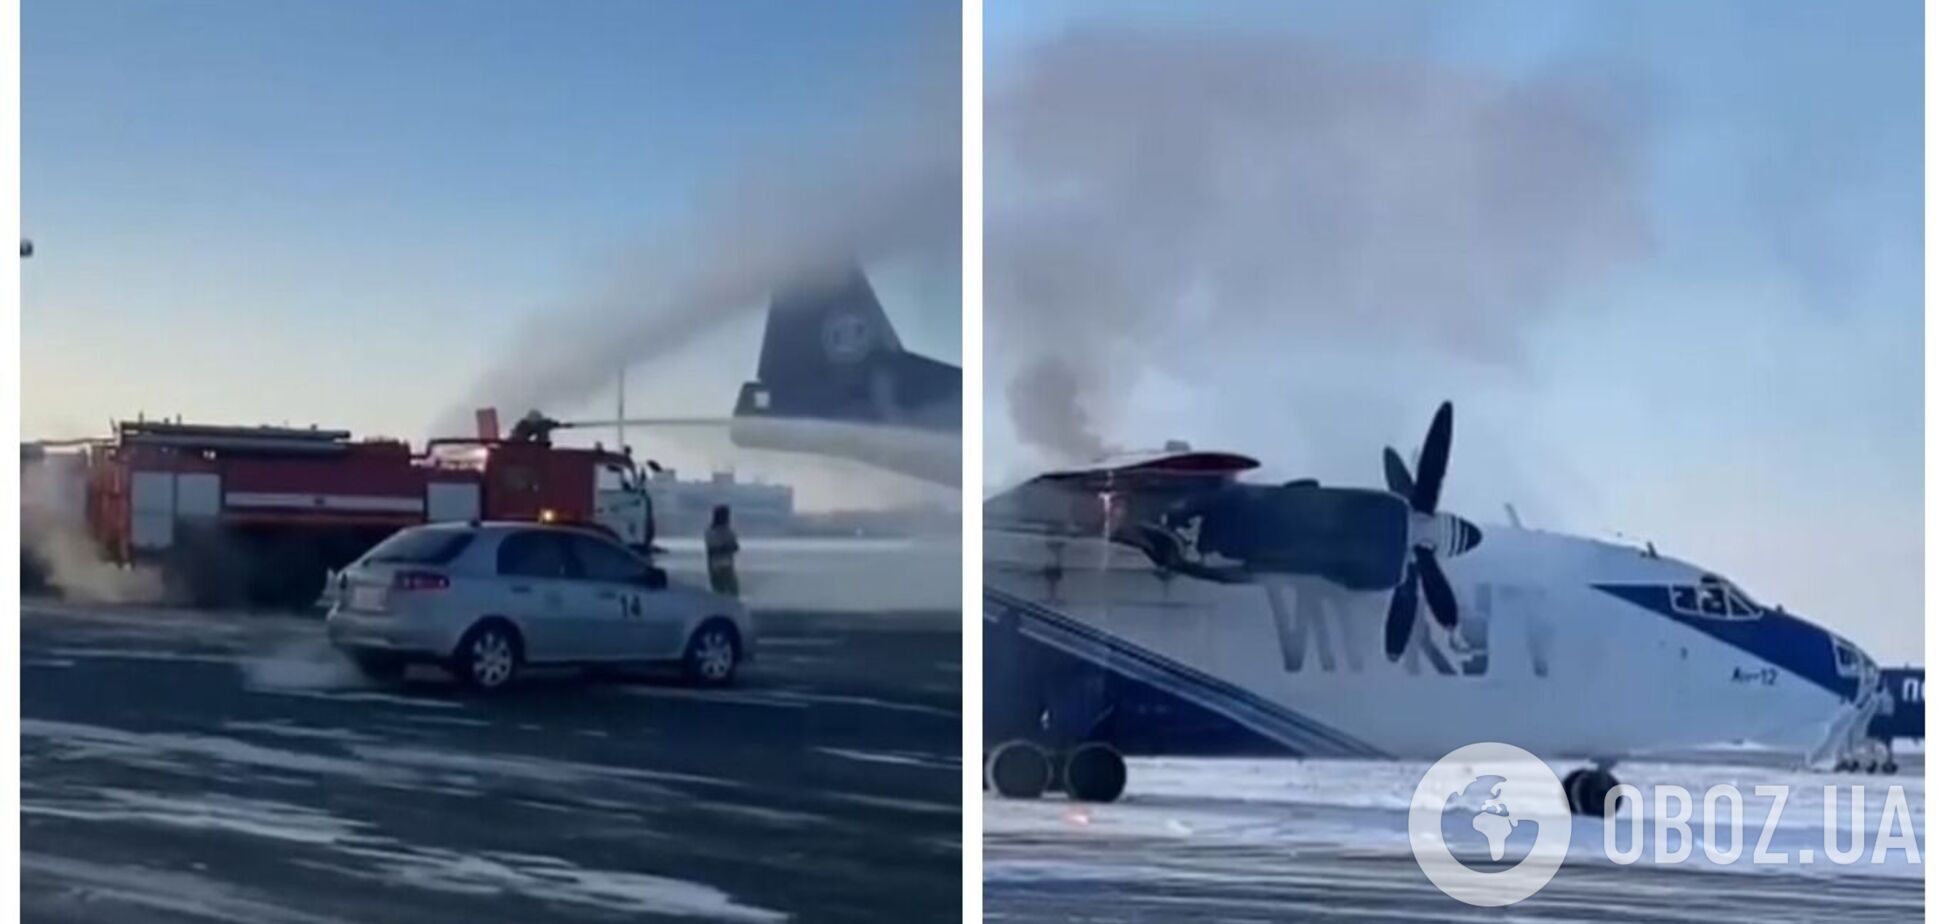  У Росії спалахнув військово-транспортний літак Ан-12БК: він екстрено приземлився в аеропорту. Відео 